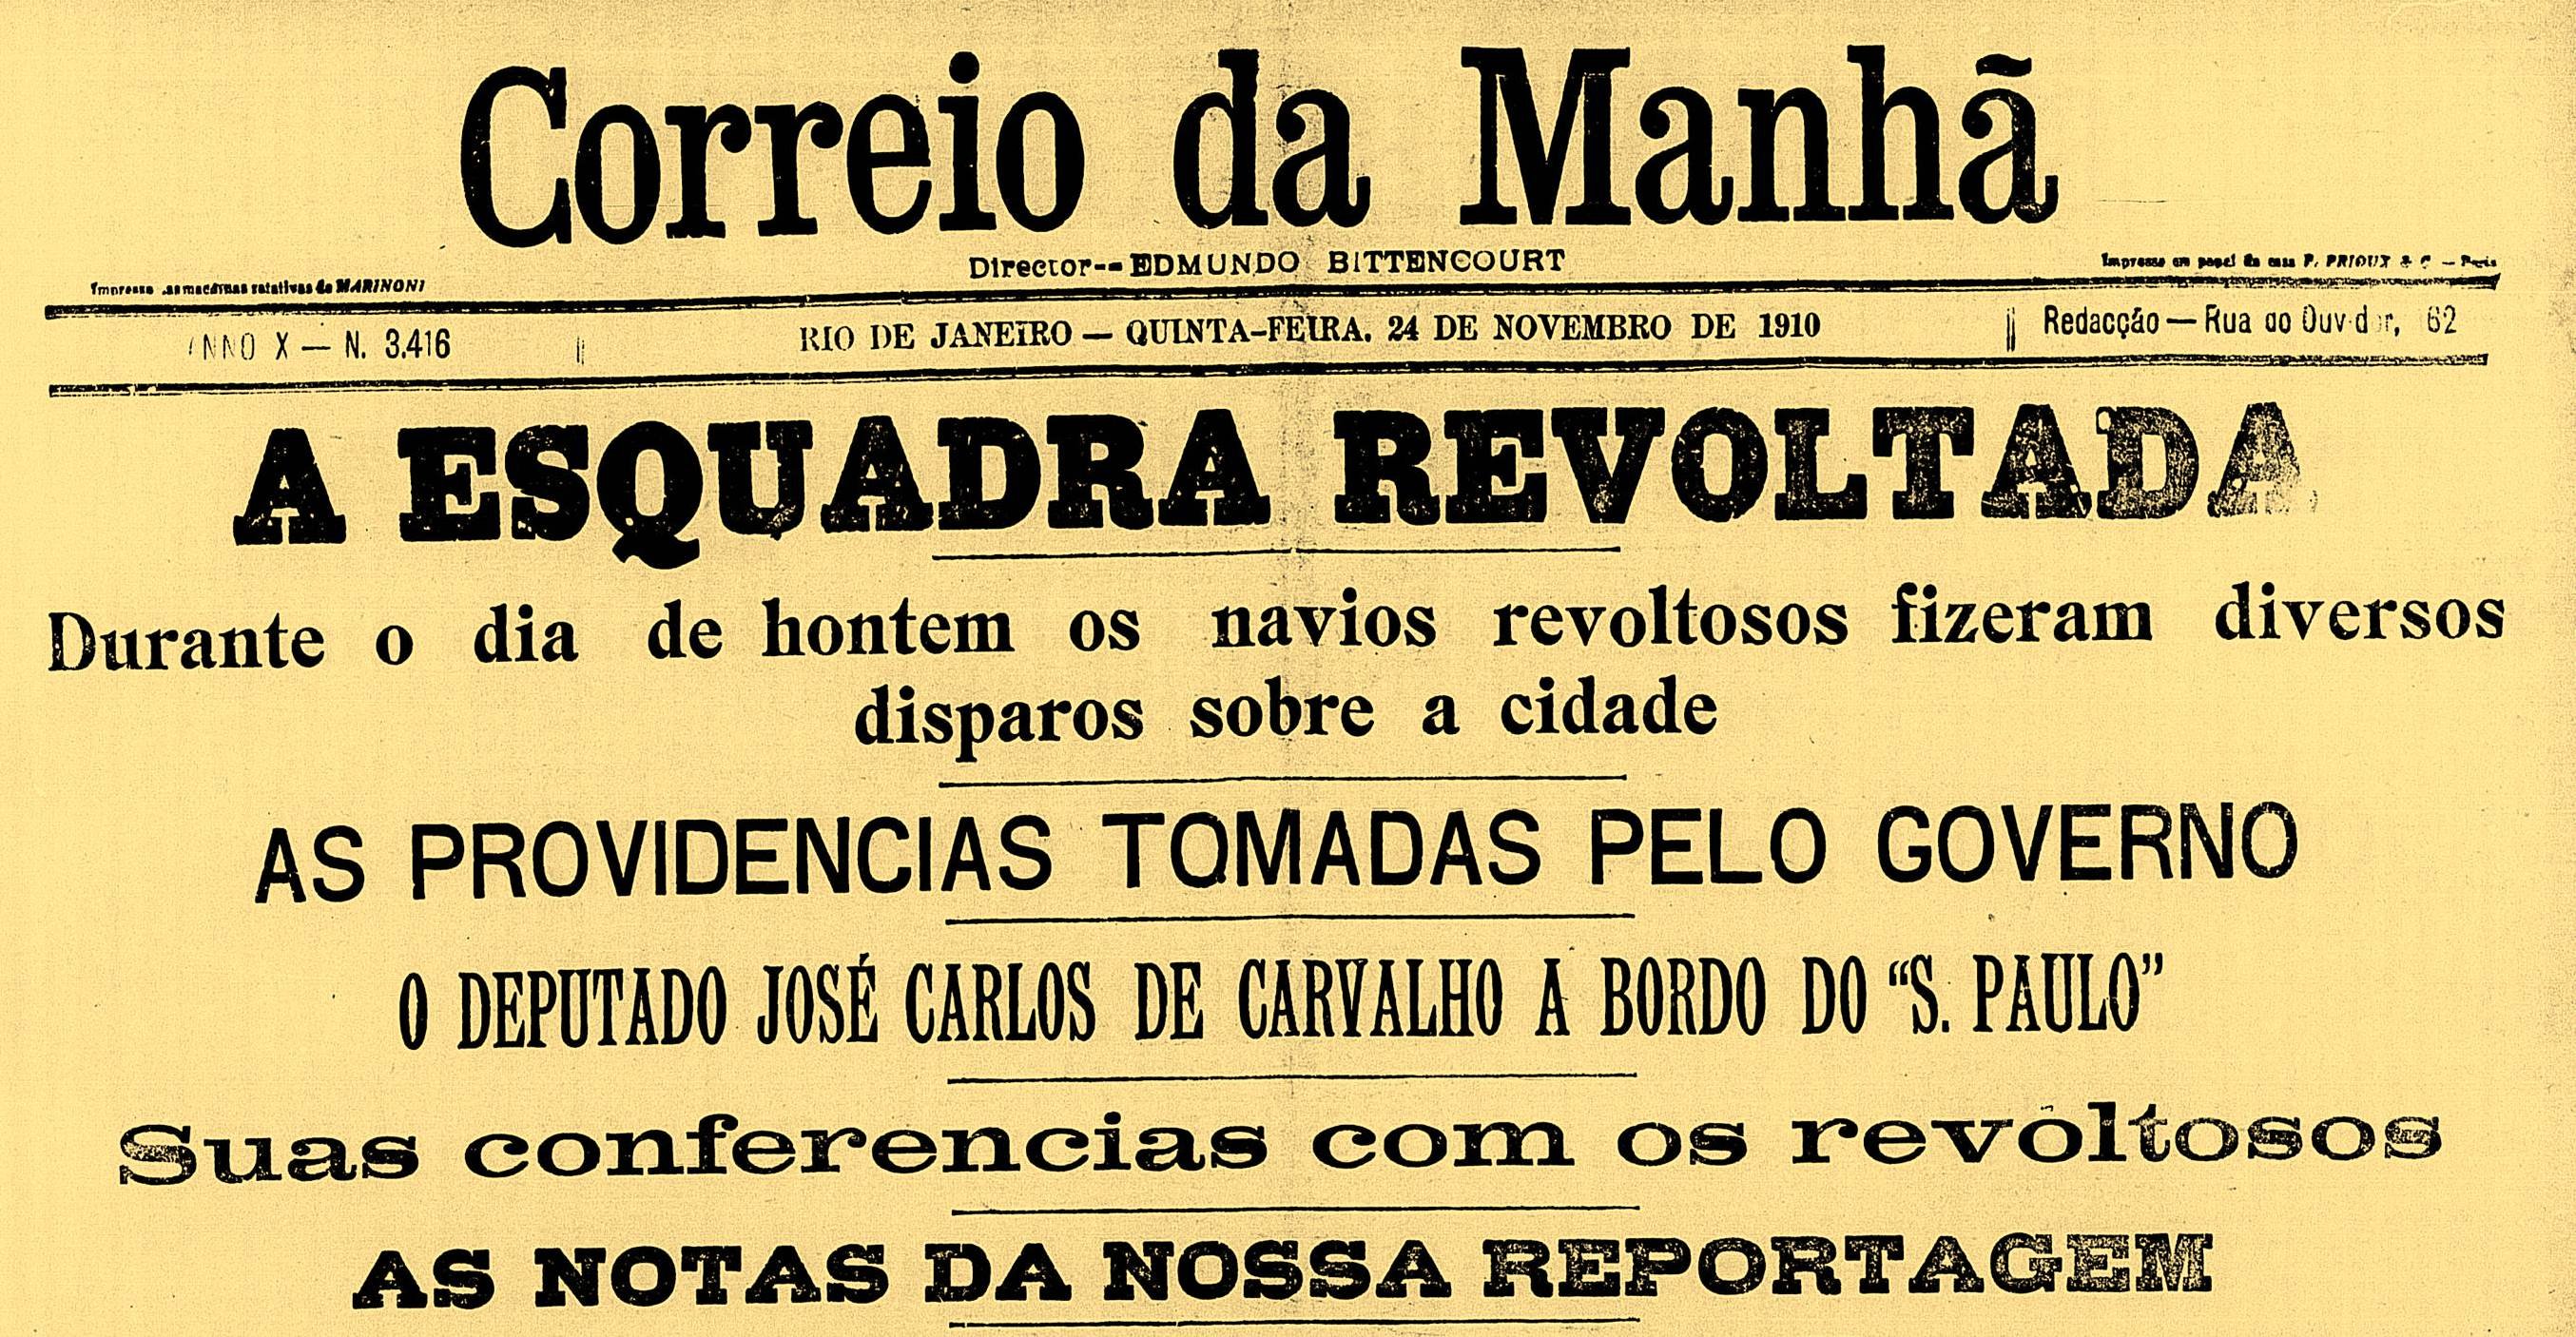 Jornal 'Correio da Manhã' em 1910 retrata a revolta da esquadra marinheira em sua manchete